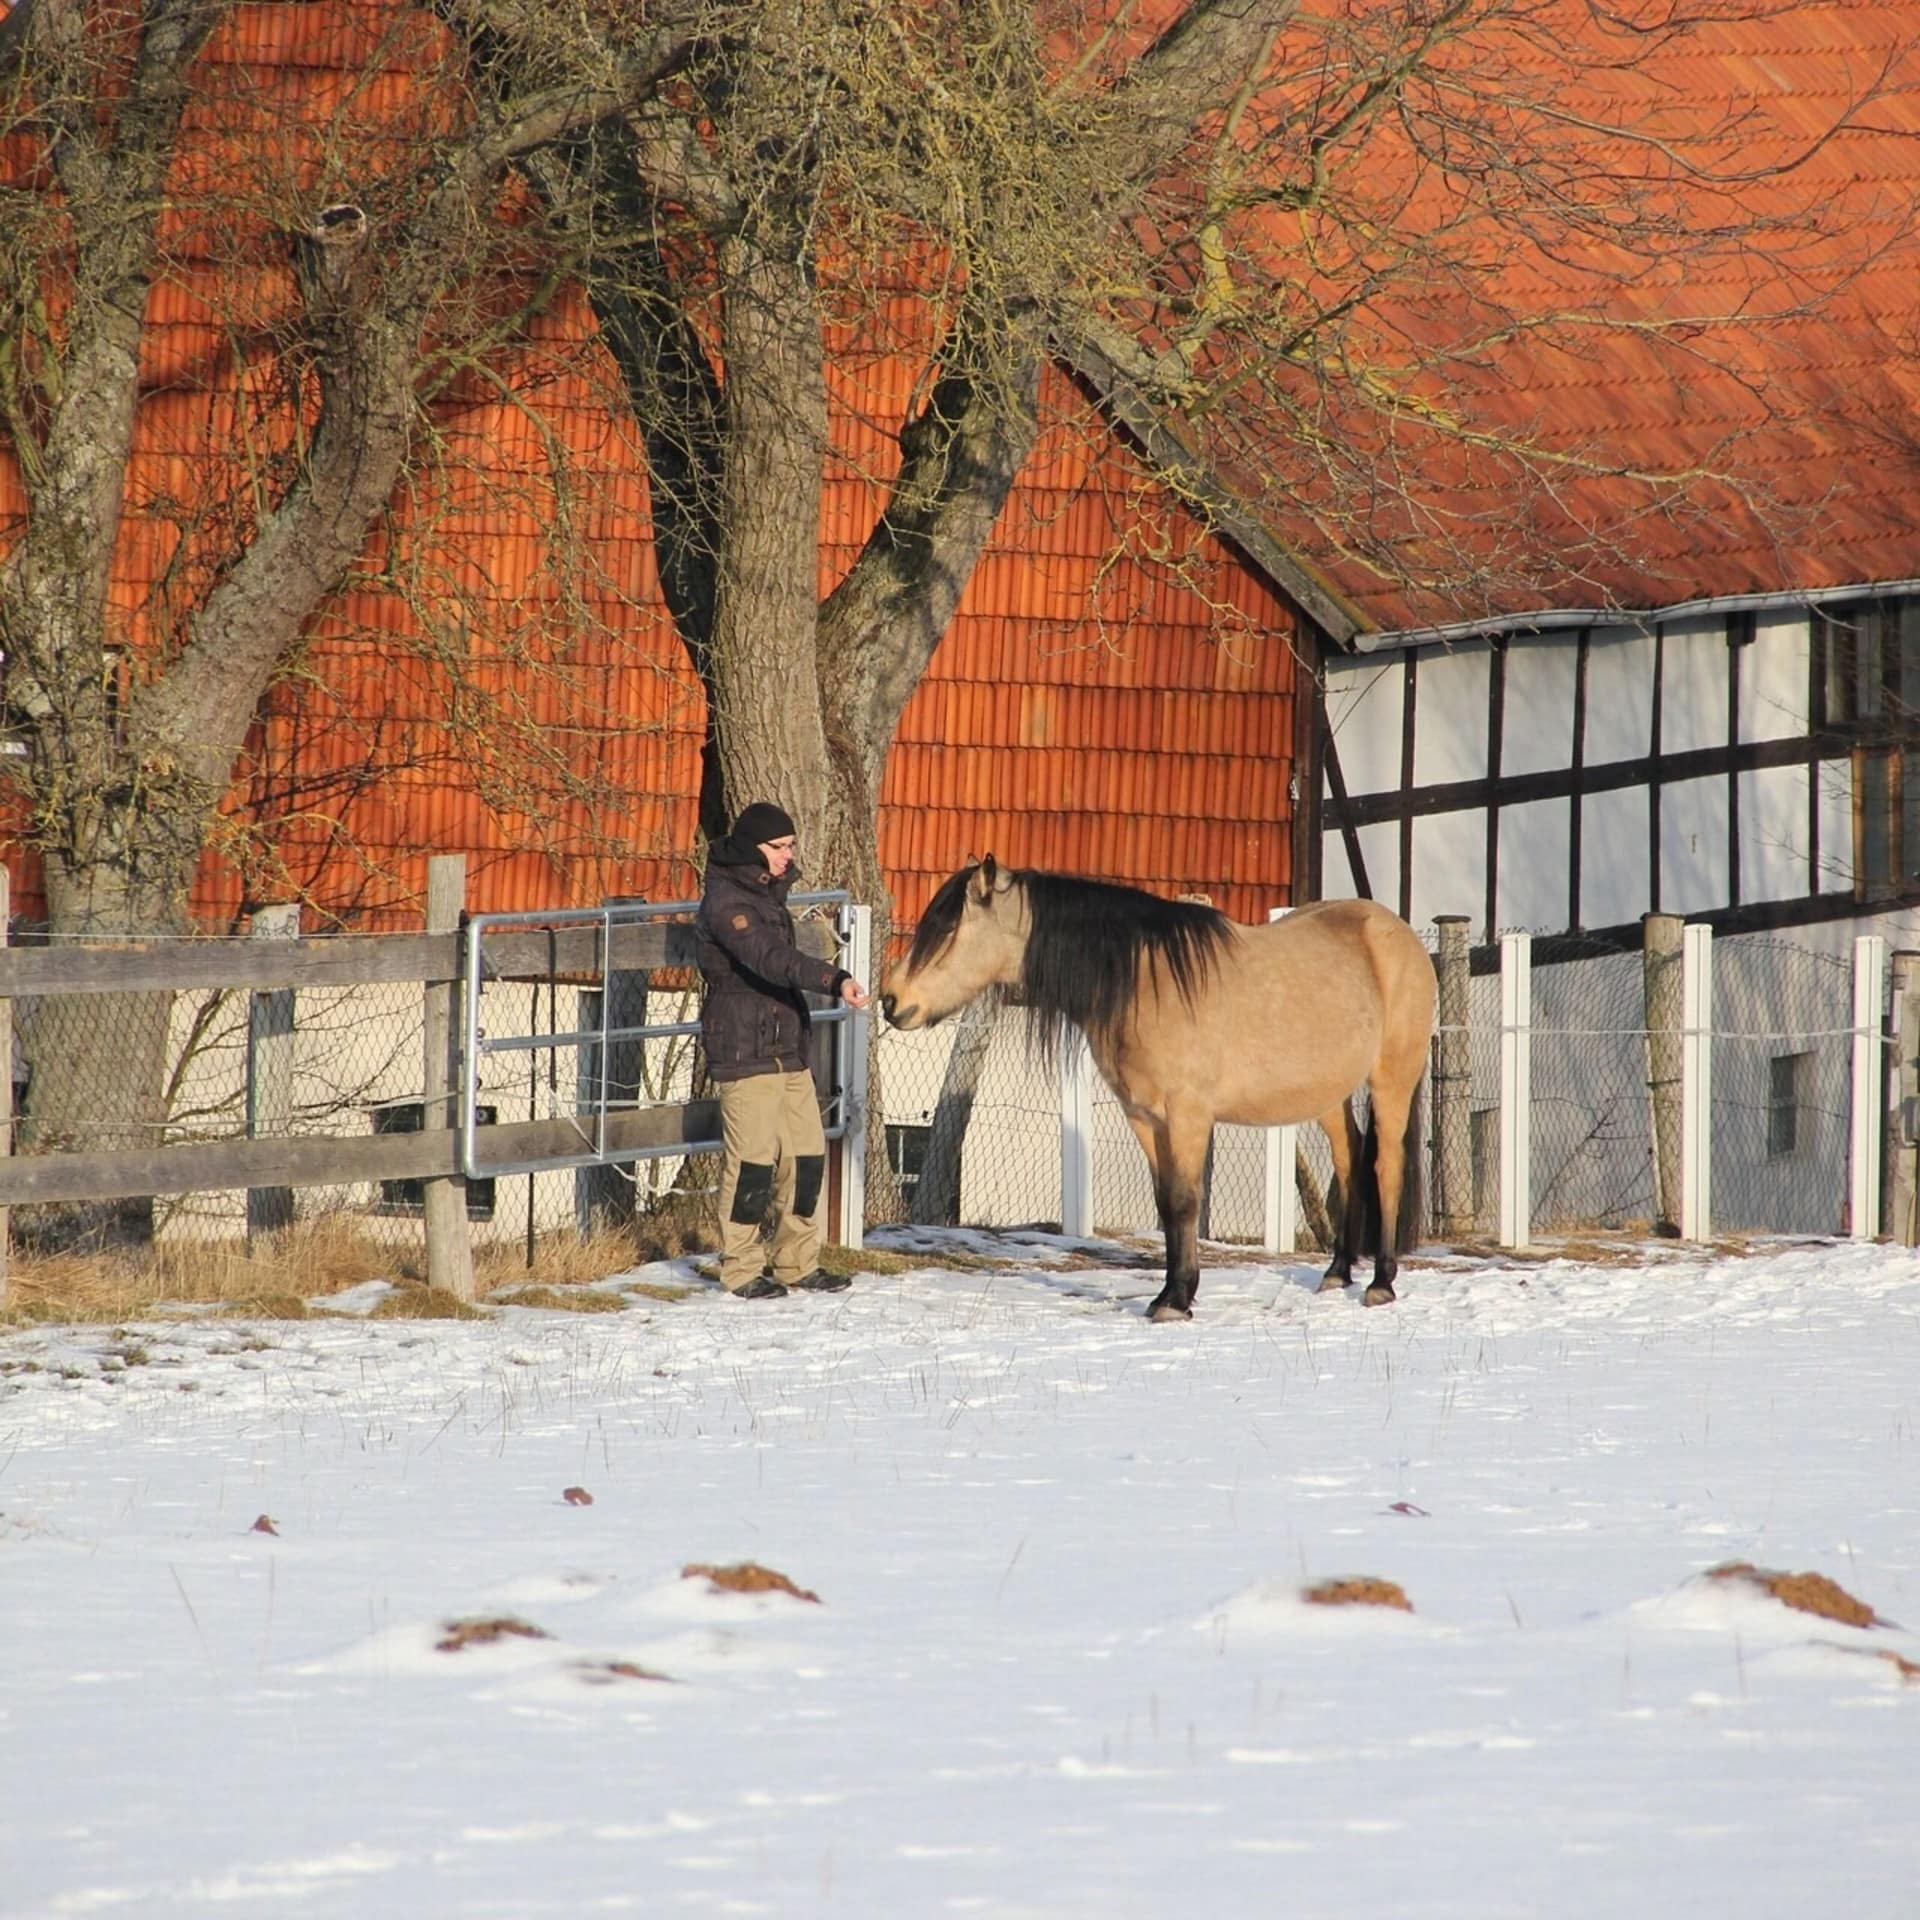 Eine verschneite Wiese vor einem Bauernhaus auf der ein Mann ein Pony füttert.